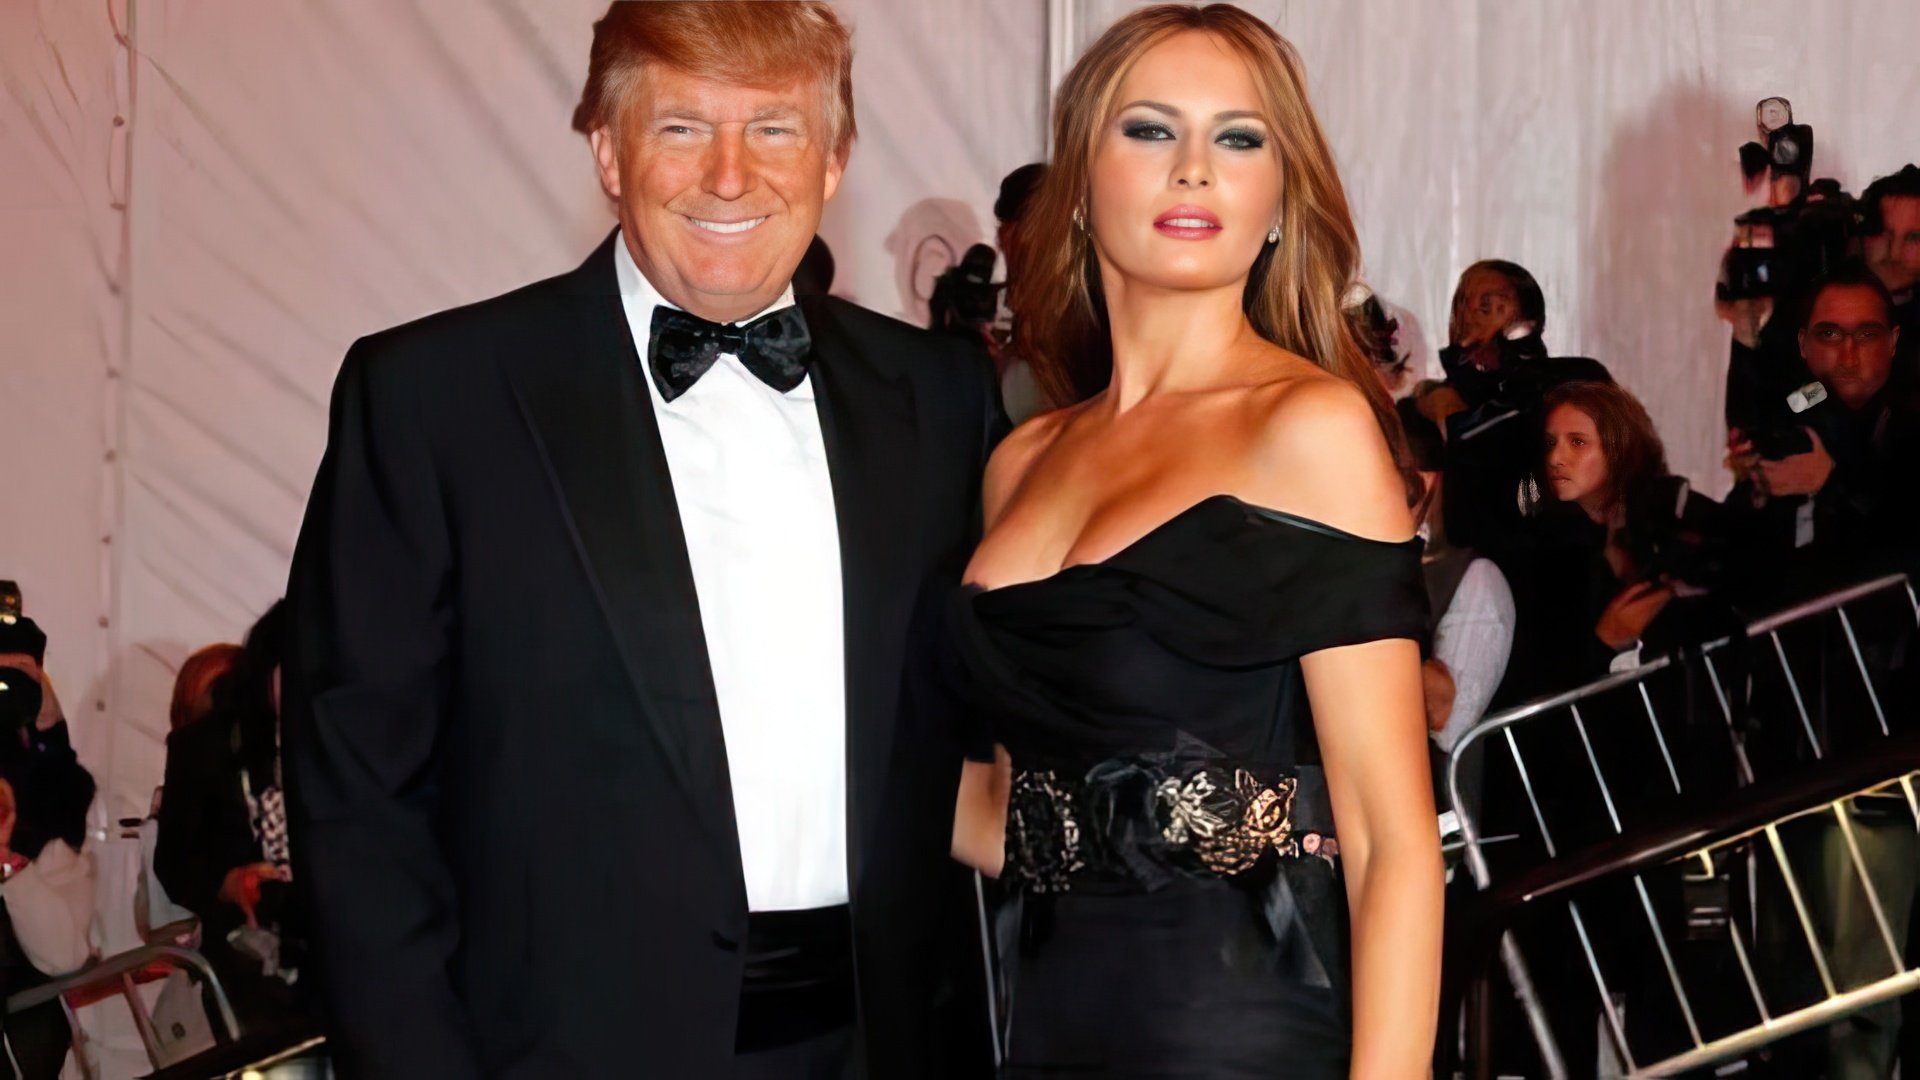 Donald Trump and Melania Knauss